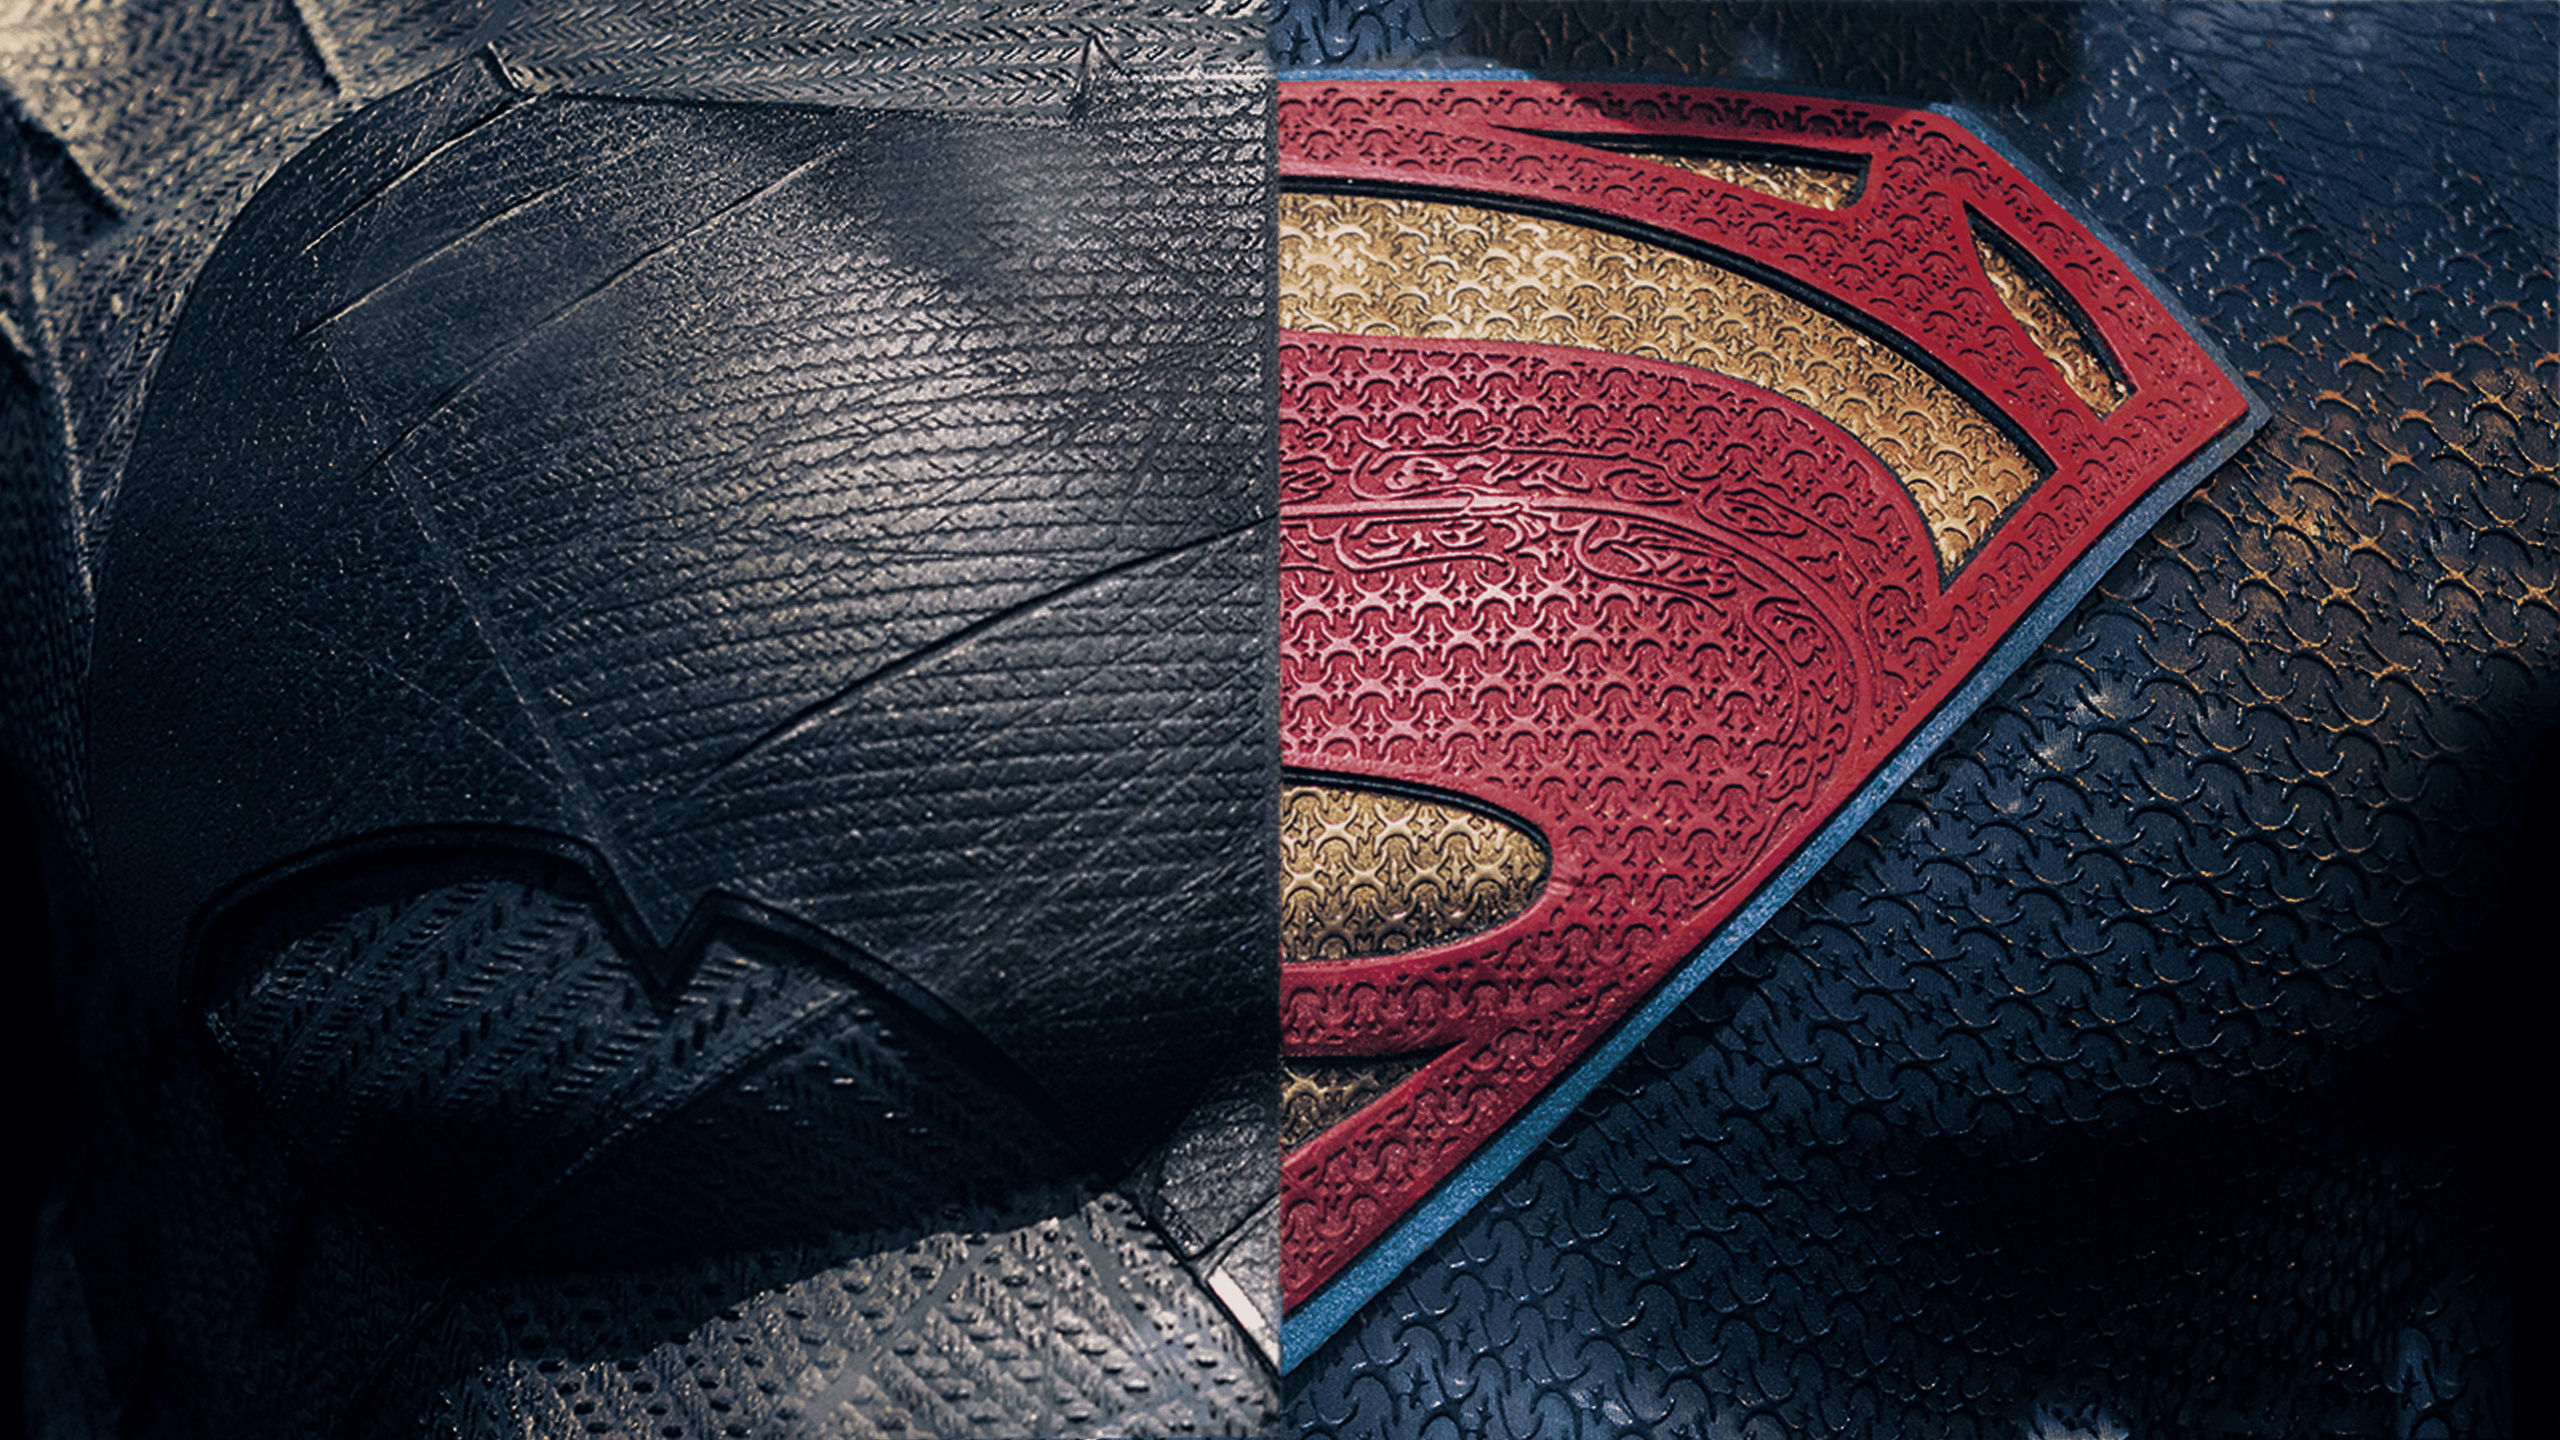 2560x1440 Batman Vs Superman Logo Wallpapers